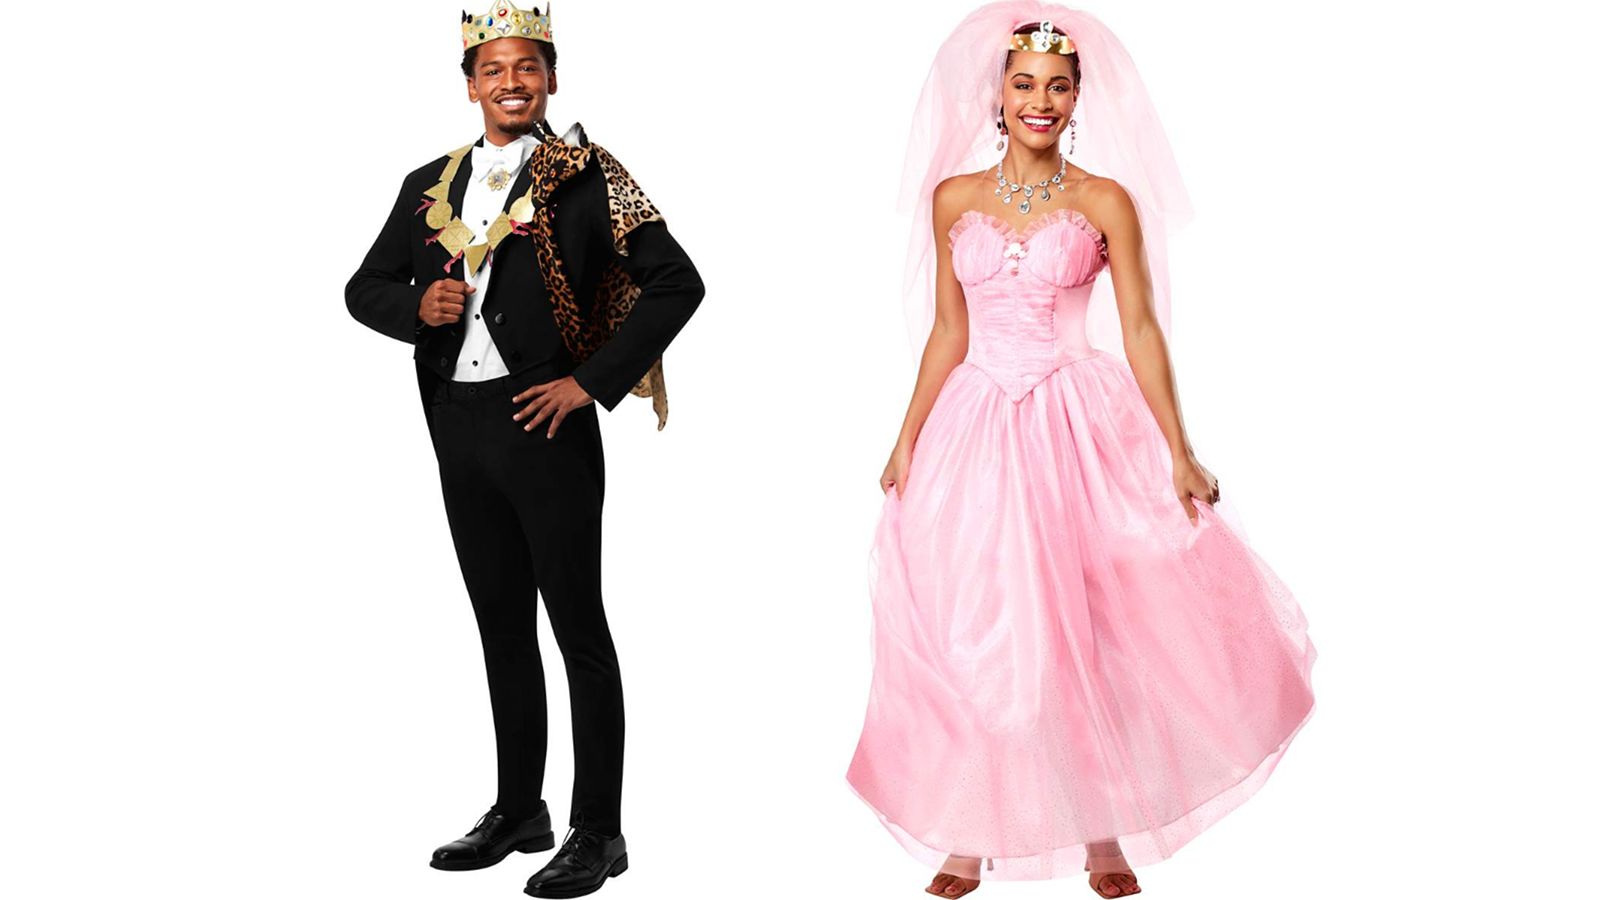 original couples costumes